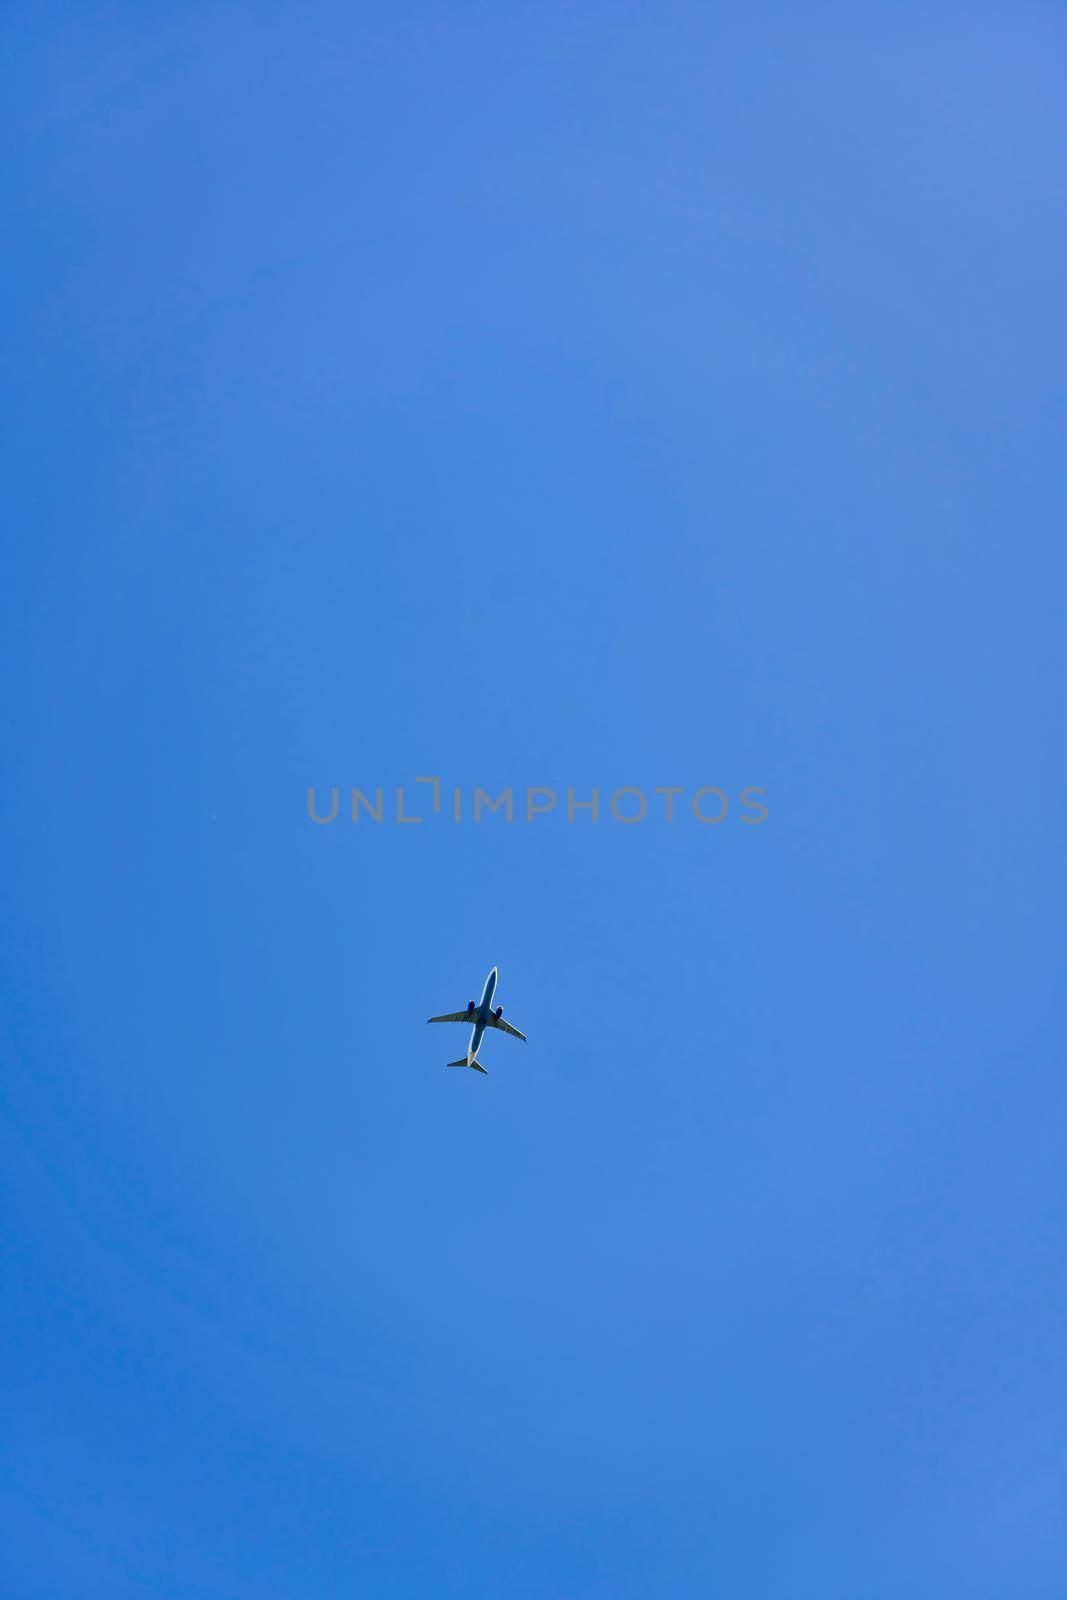 High flying passenger plane against the blue sky. Vertical shot